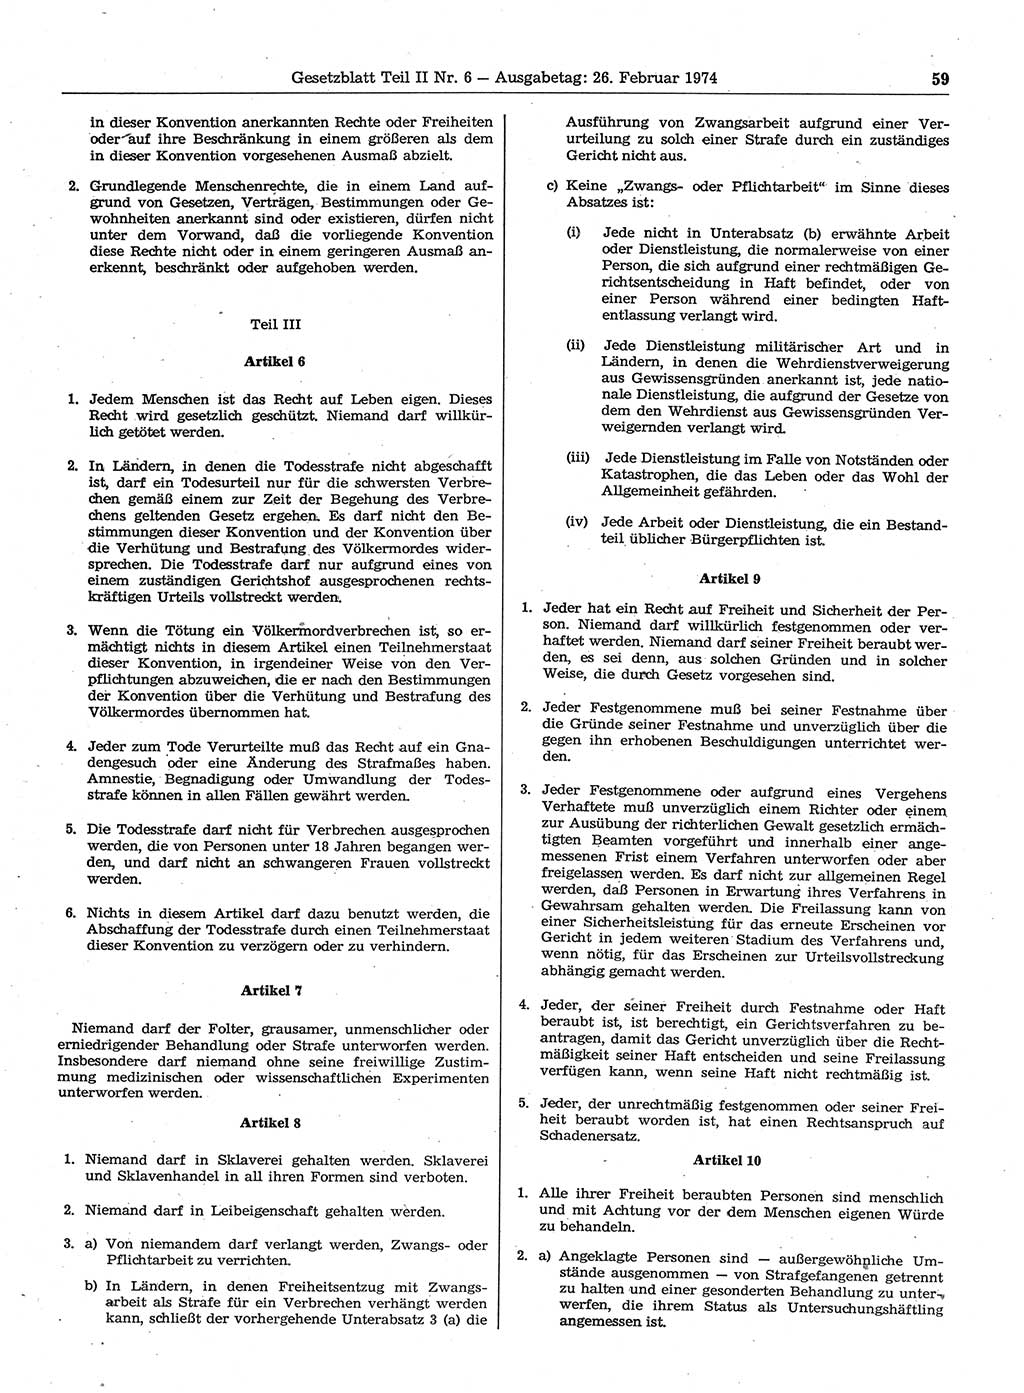 Gesetzblatt (GBl.) der Deutschen Demokratischen Republik (DDR) Teil ⅠⅠ 1974, Seite 59 (GBl. DDR ⅠⅠ 1974, S. 59)